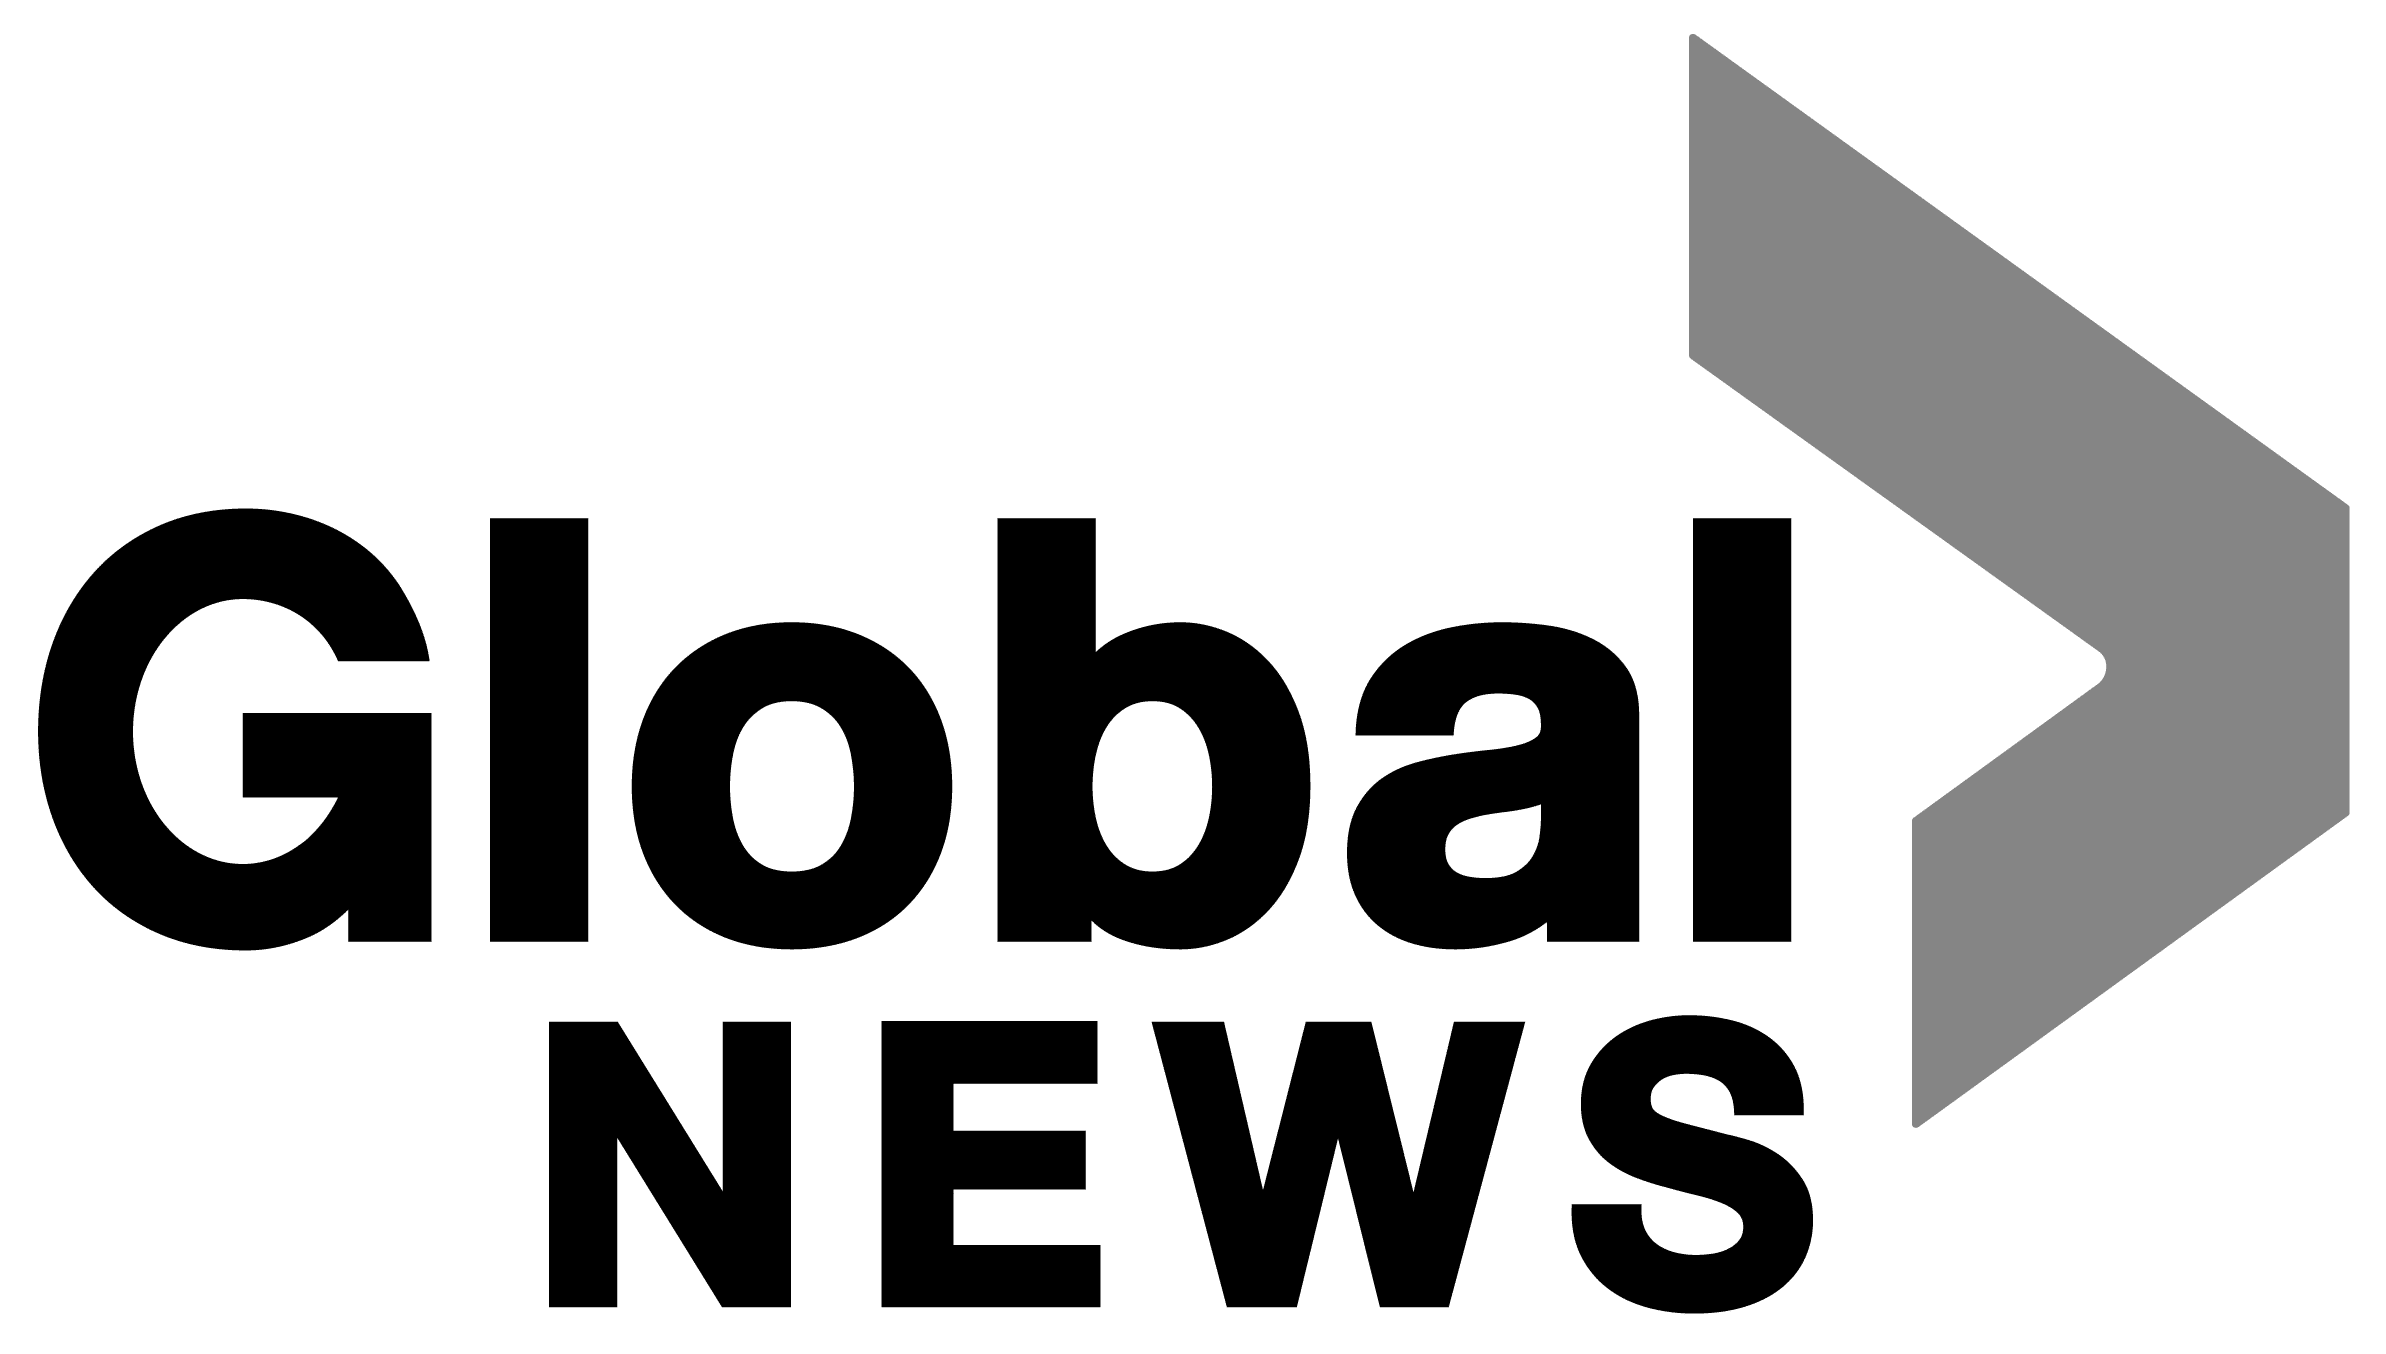 Global news logo in greyscale.